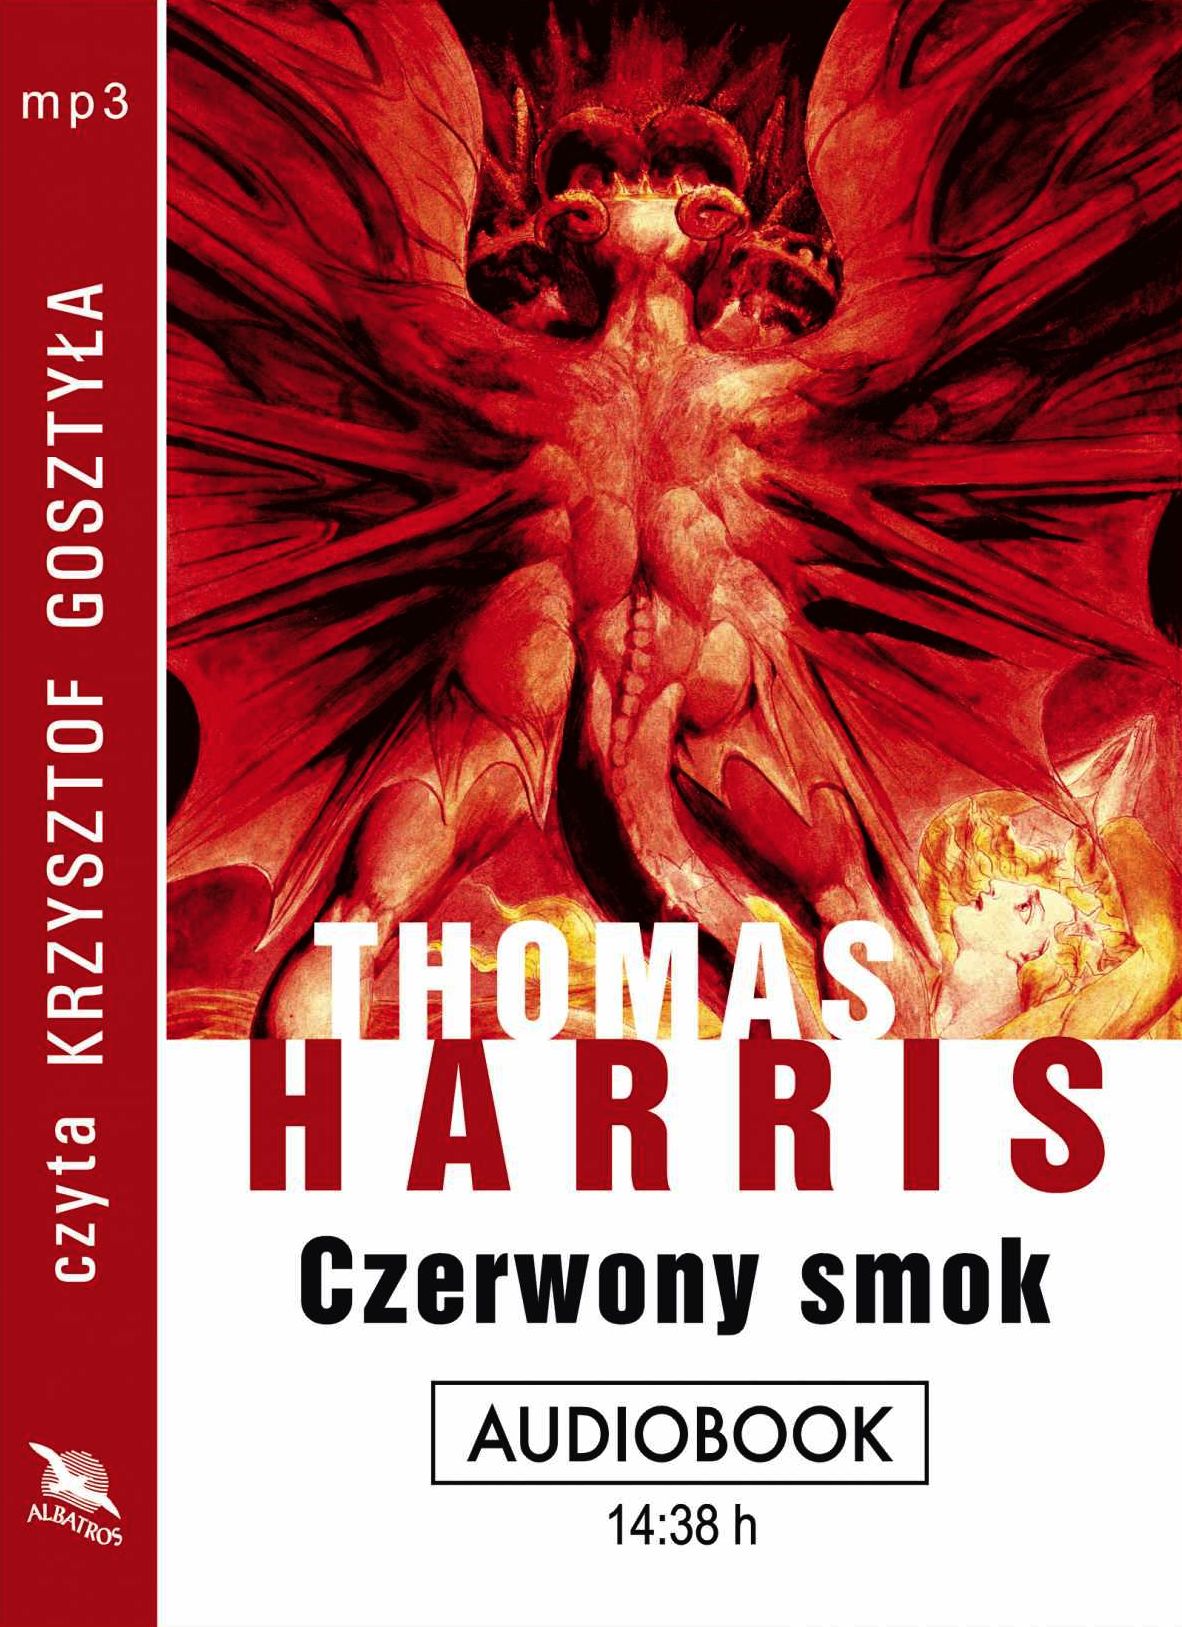 HARRIS THOMAS - CZERWONY SMOK